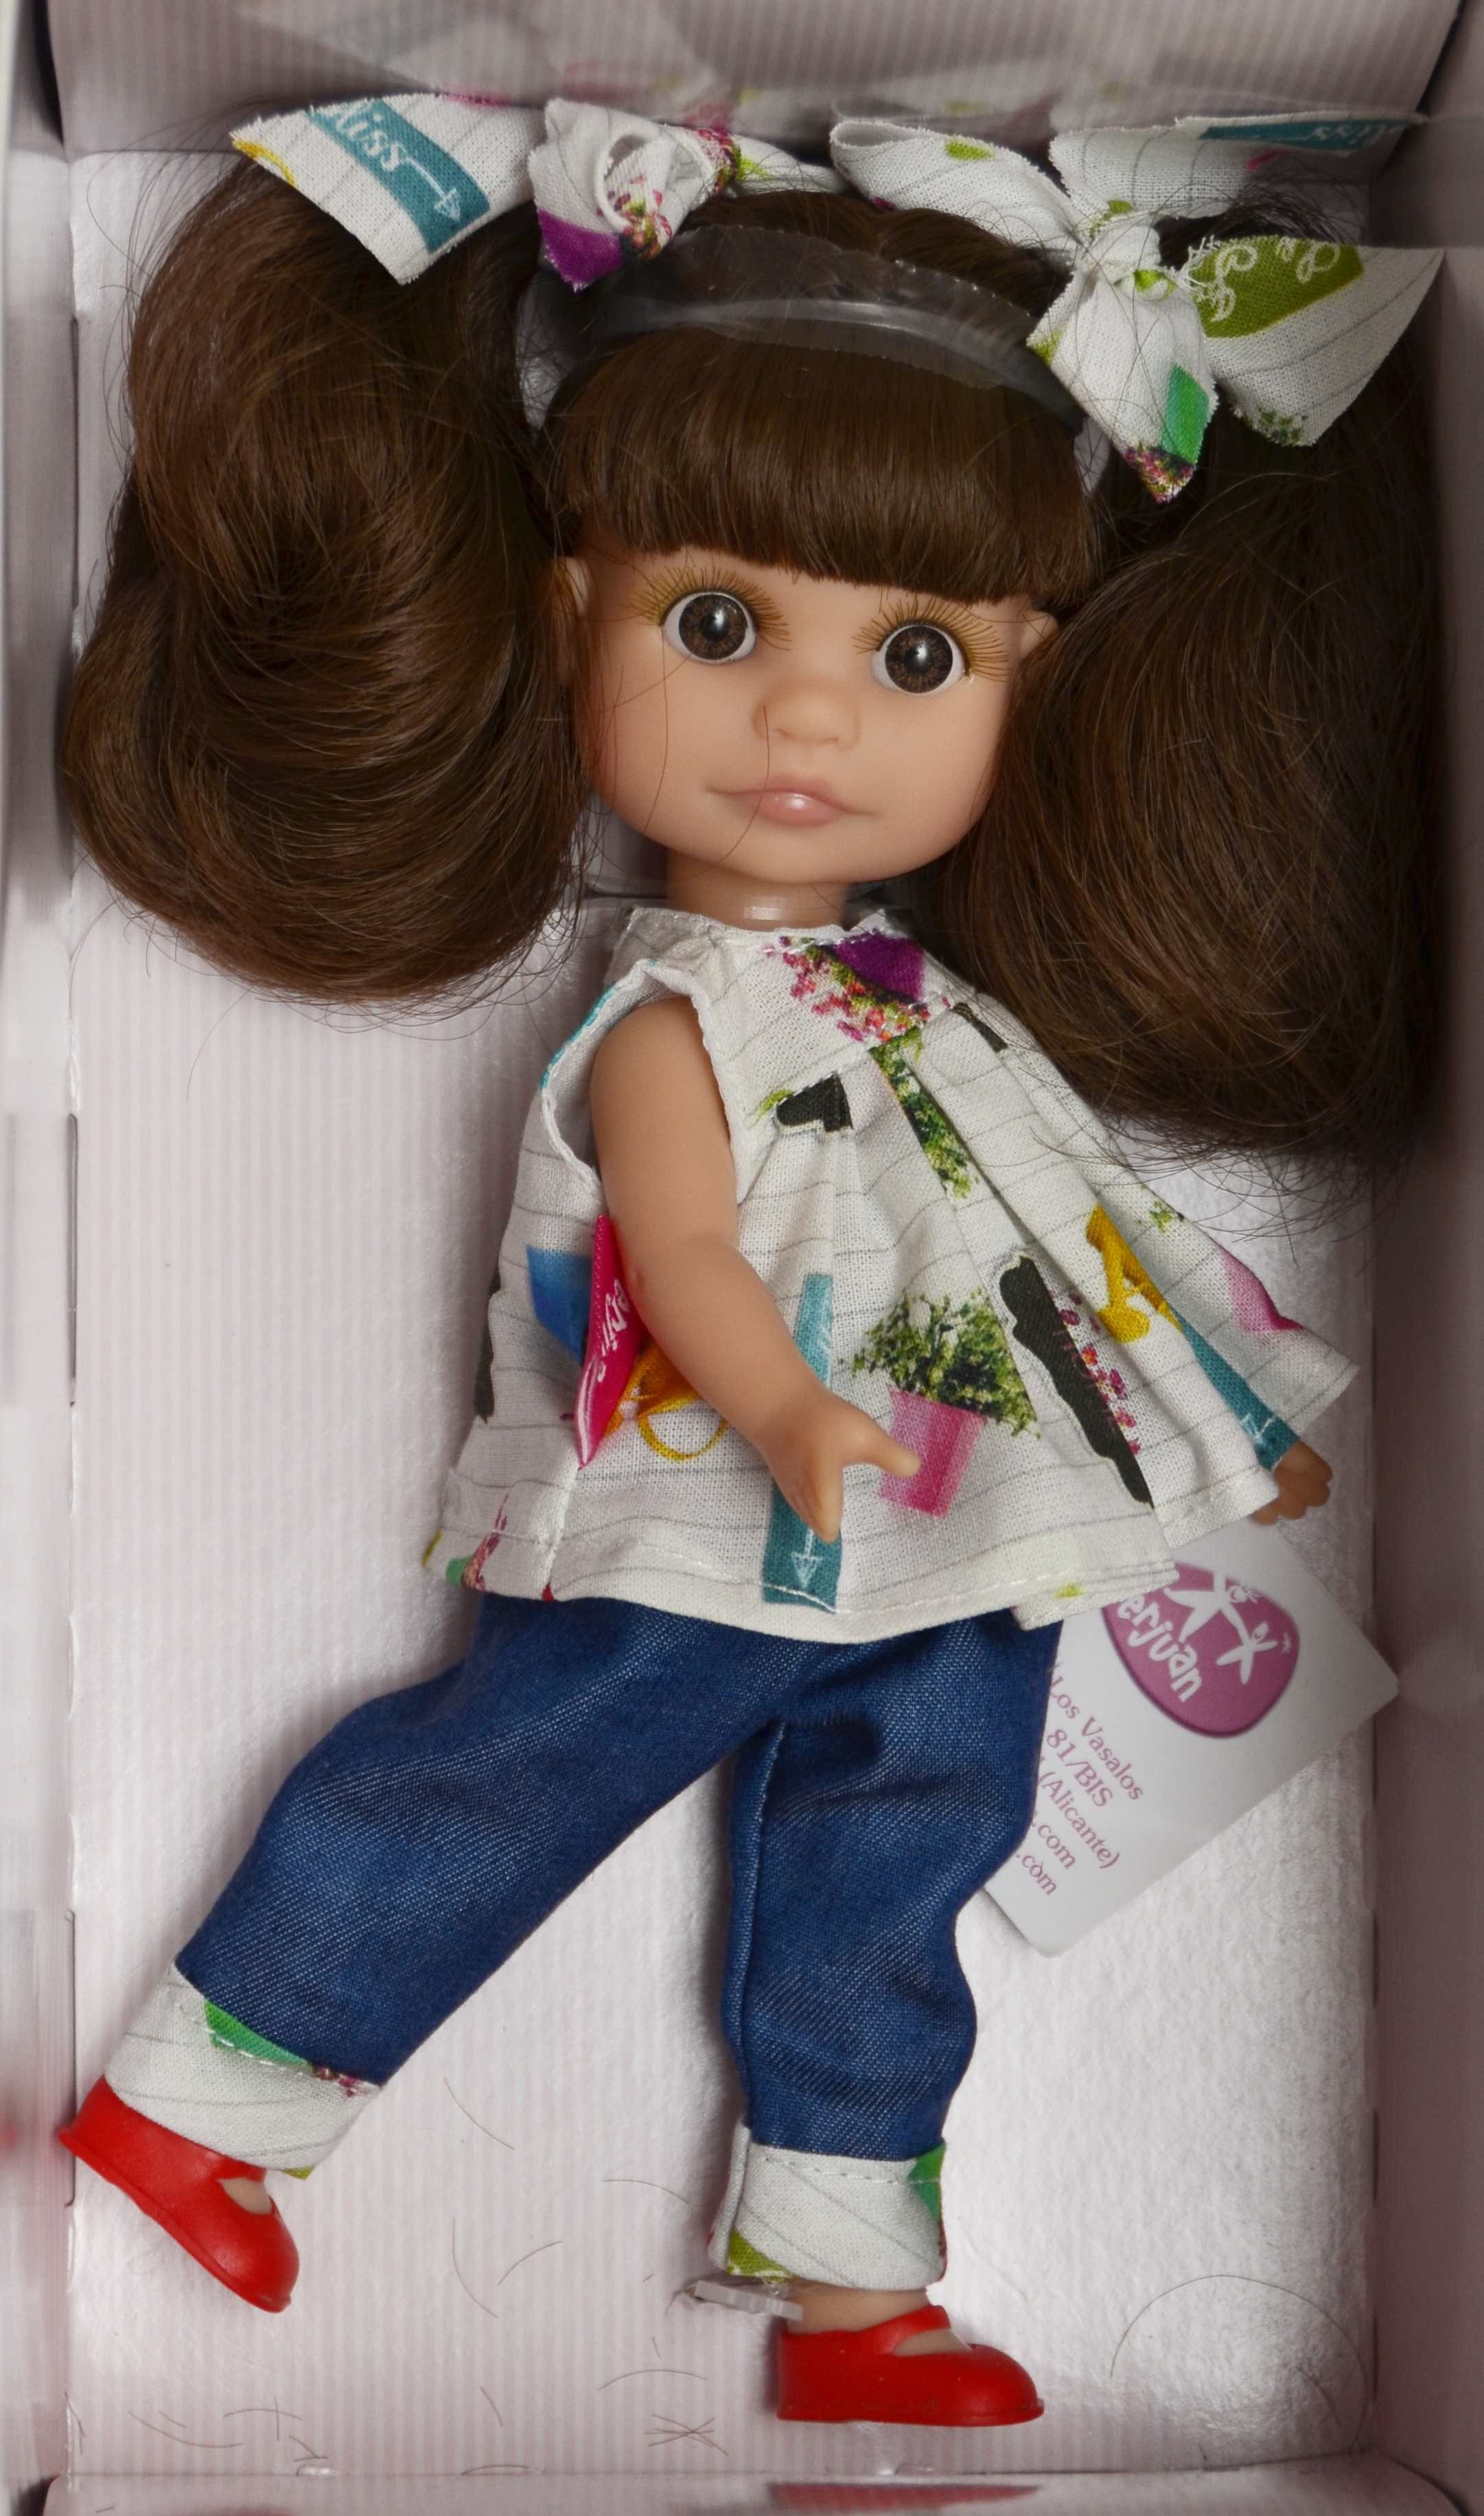 Realistická panenka Luci s culíky od firmy Berjuan